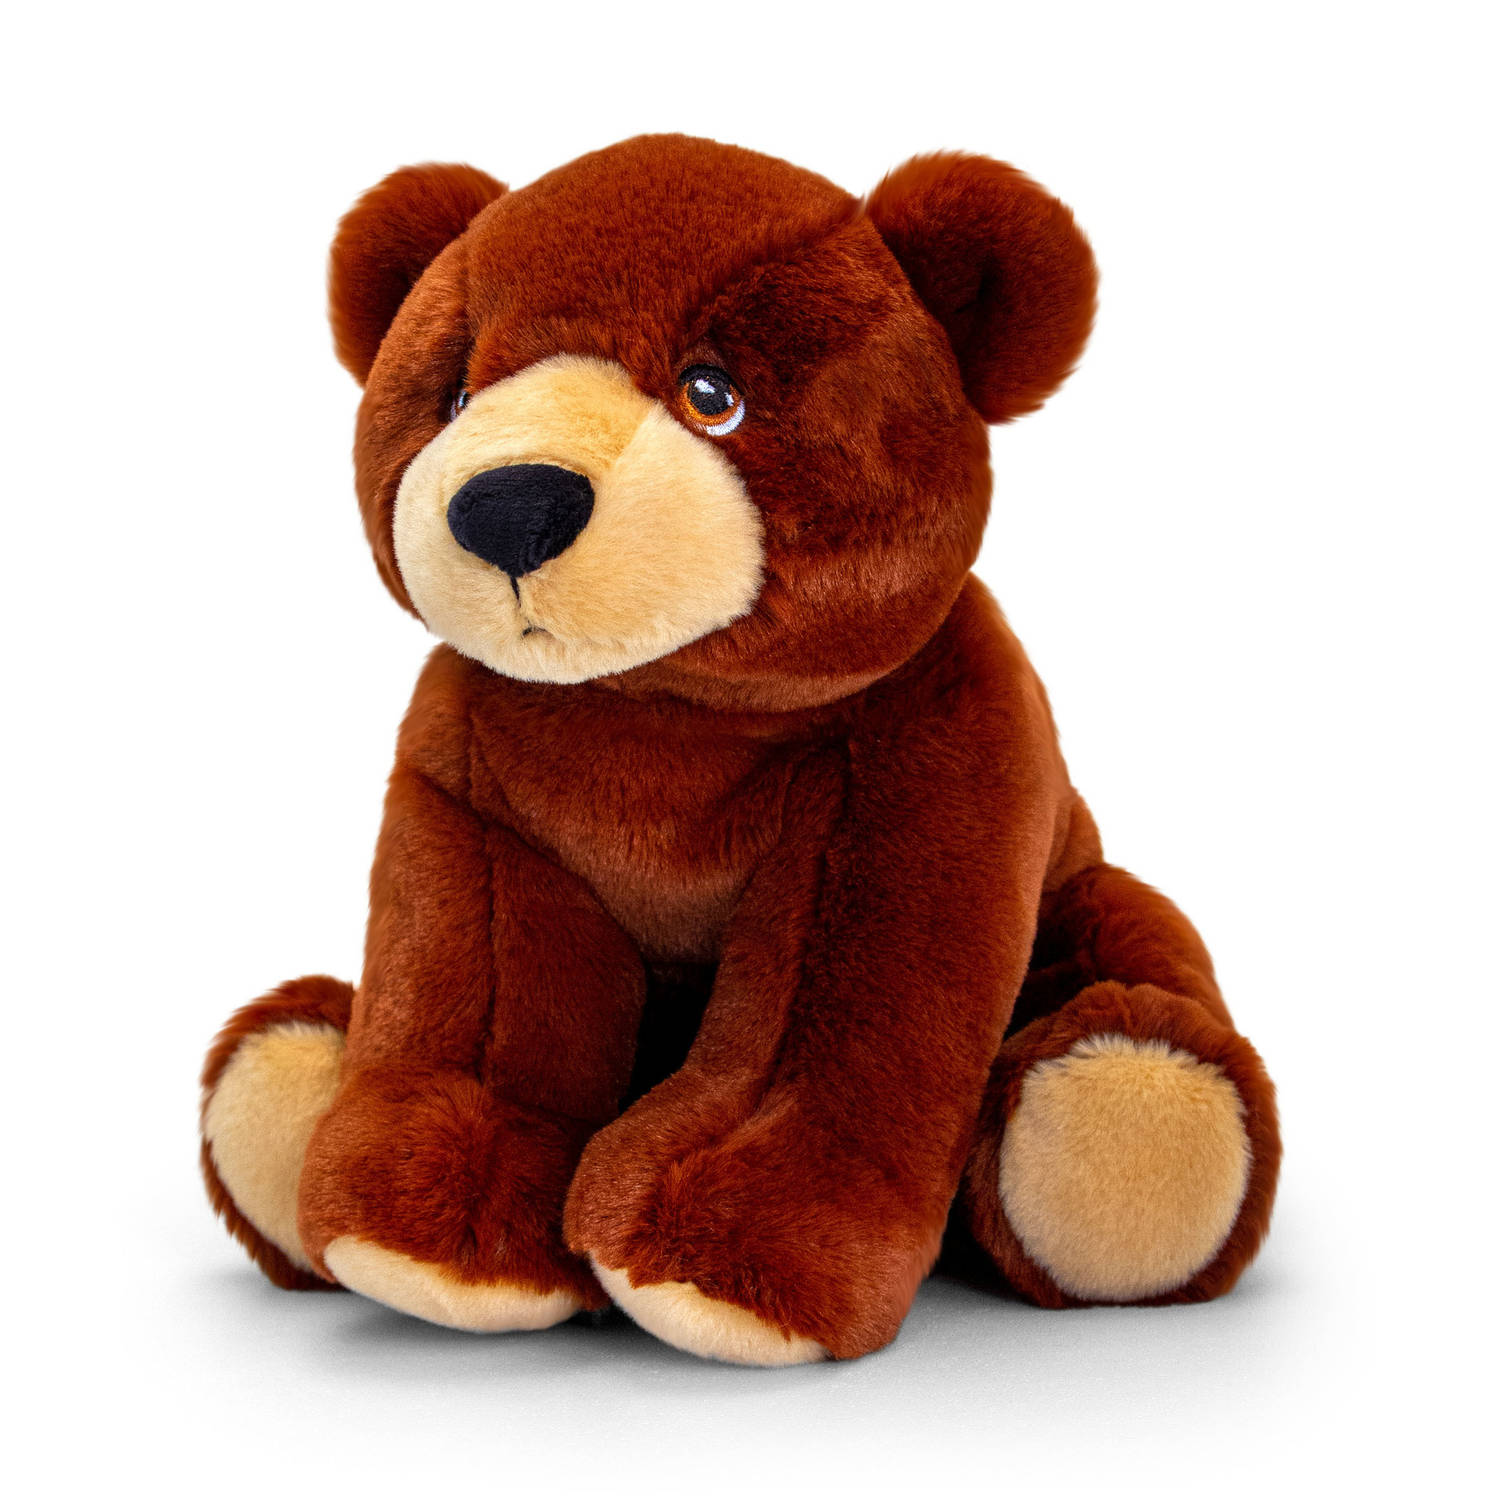 Pluche knuffel dieren bruine beer 25 cm - Knuffelbeesten beren speelgoed